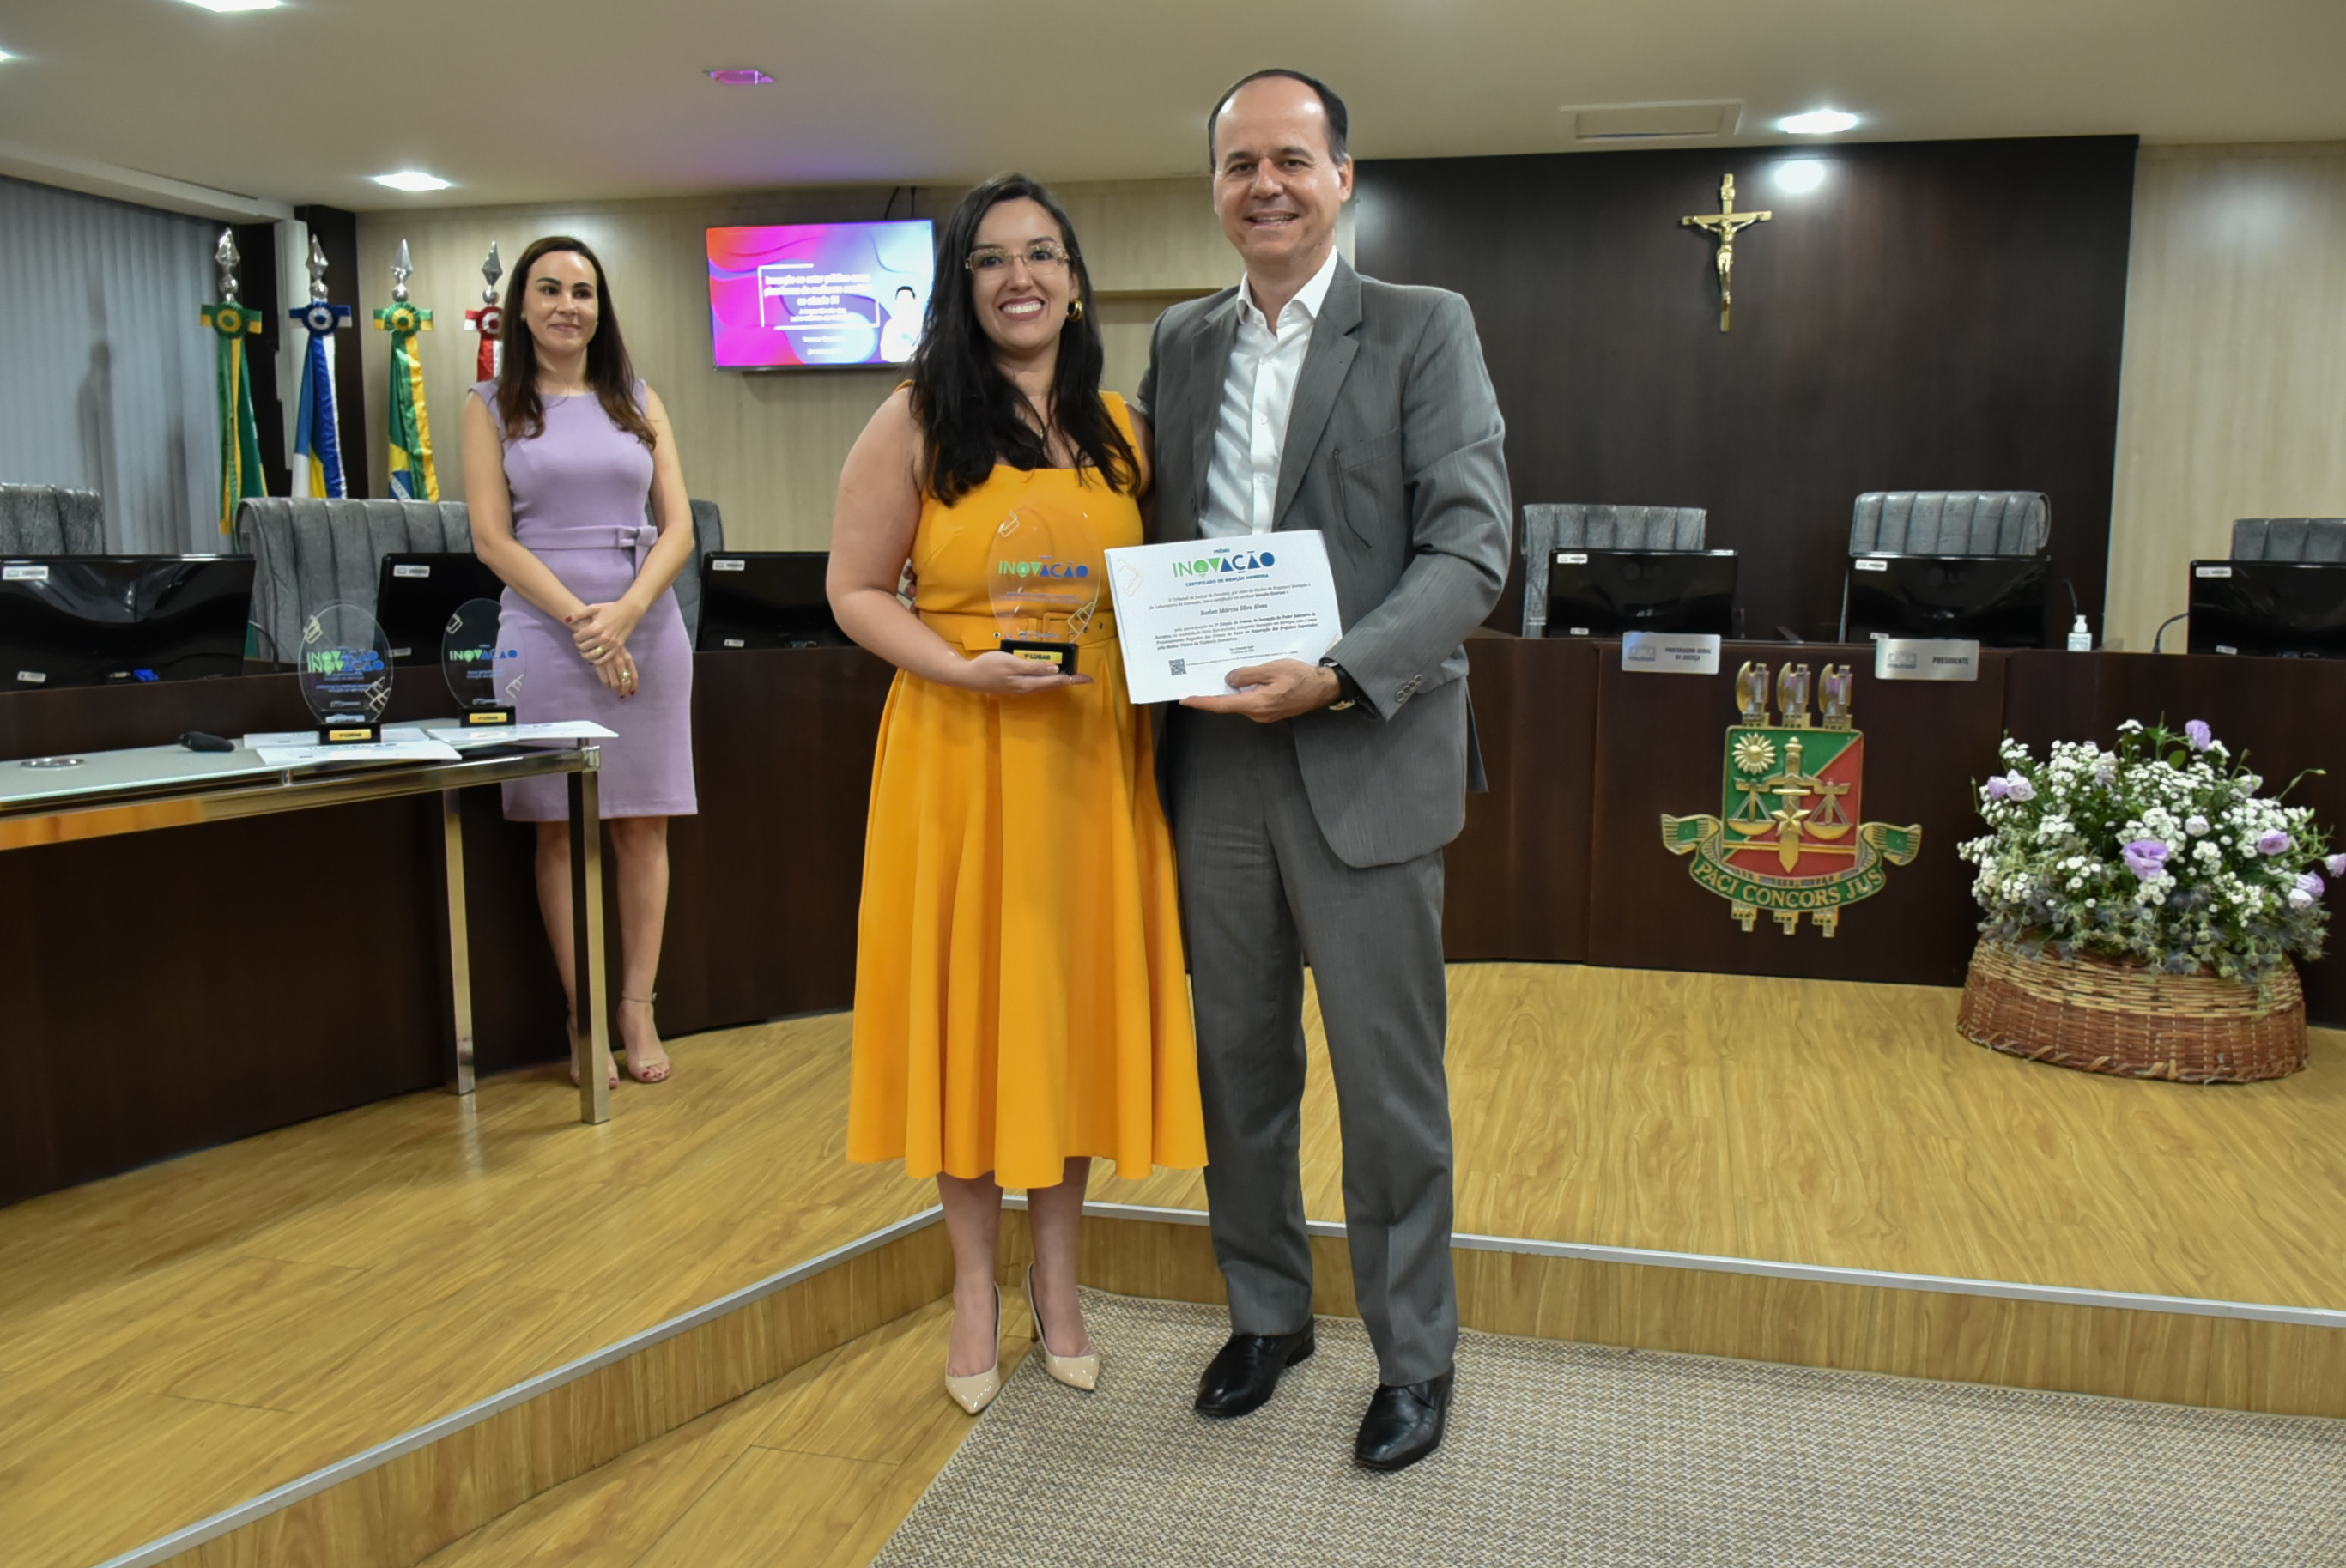 Imagem colorida em formato retangular mostra o presidente Cristóvão Suter segurando o certificado do prêmio inovação ao seu lado está com  a juíza Suelen Alves, a mesma  segura o troféu da premiação. 